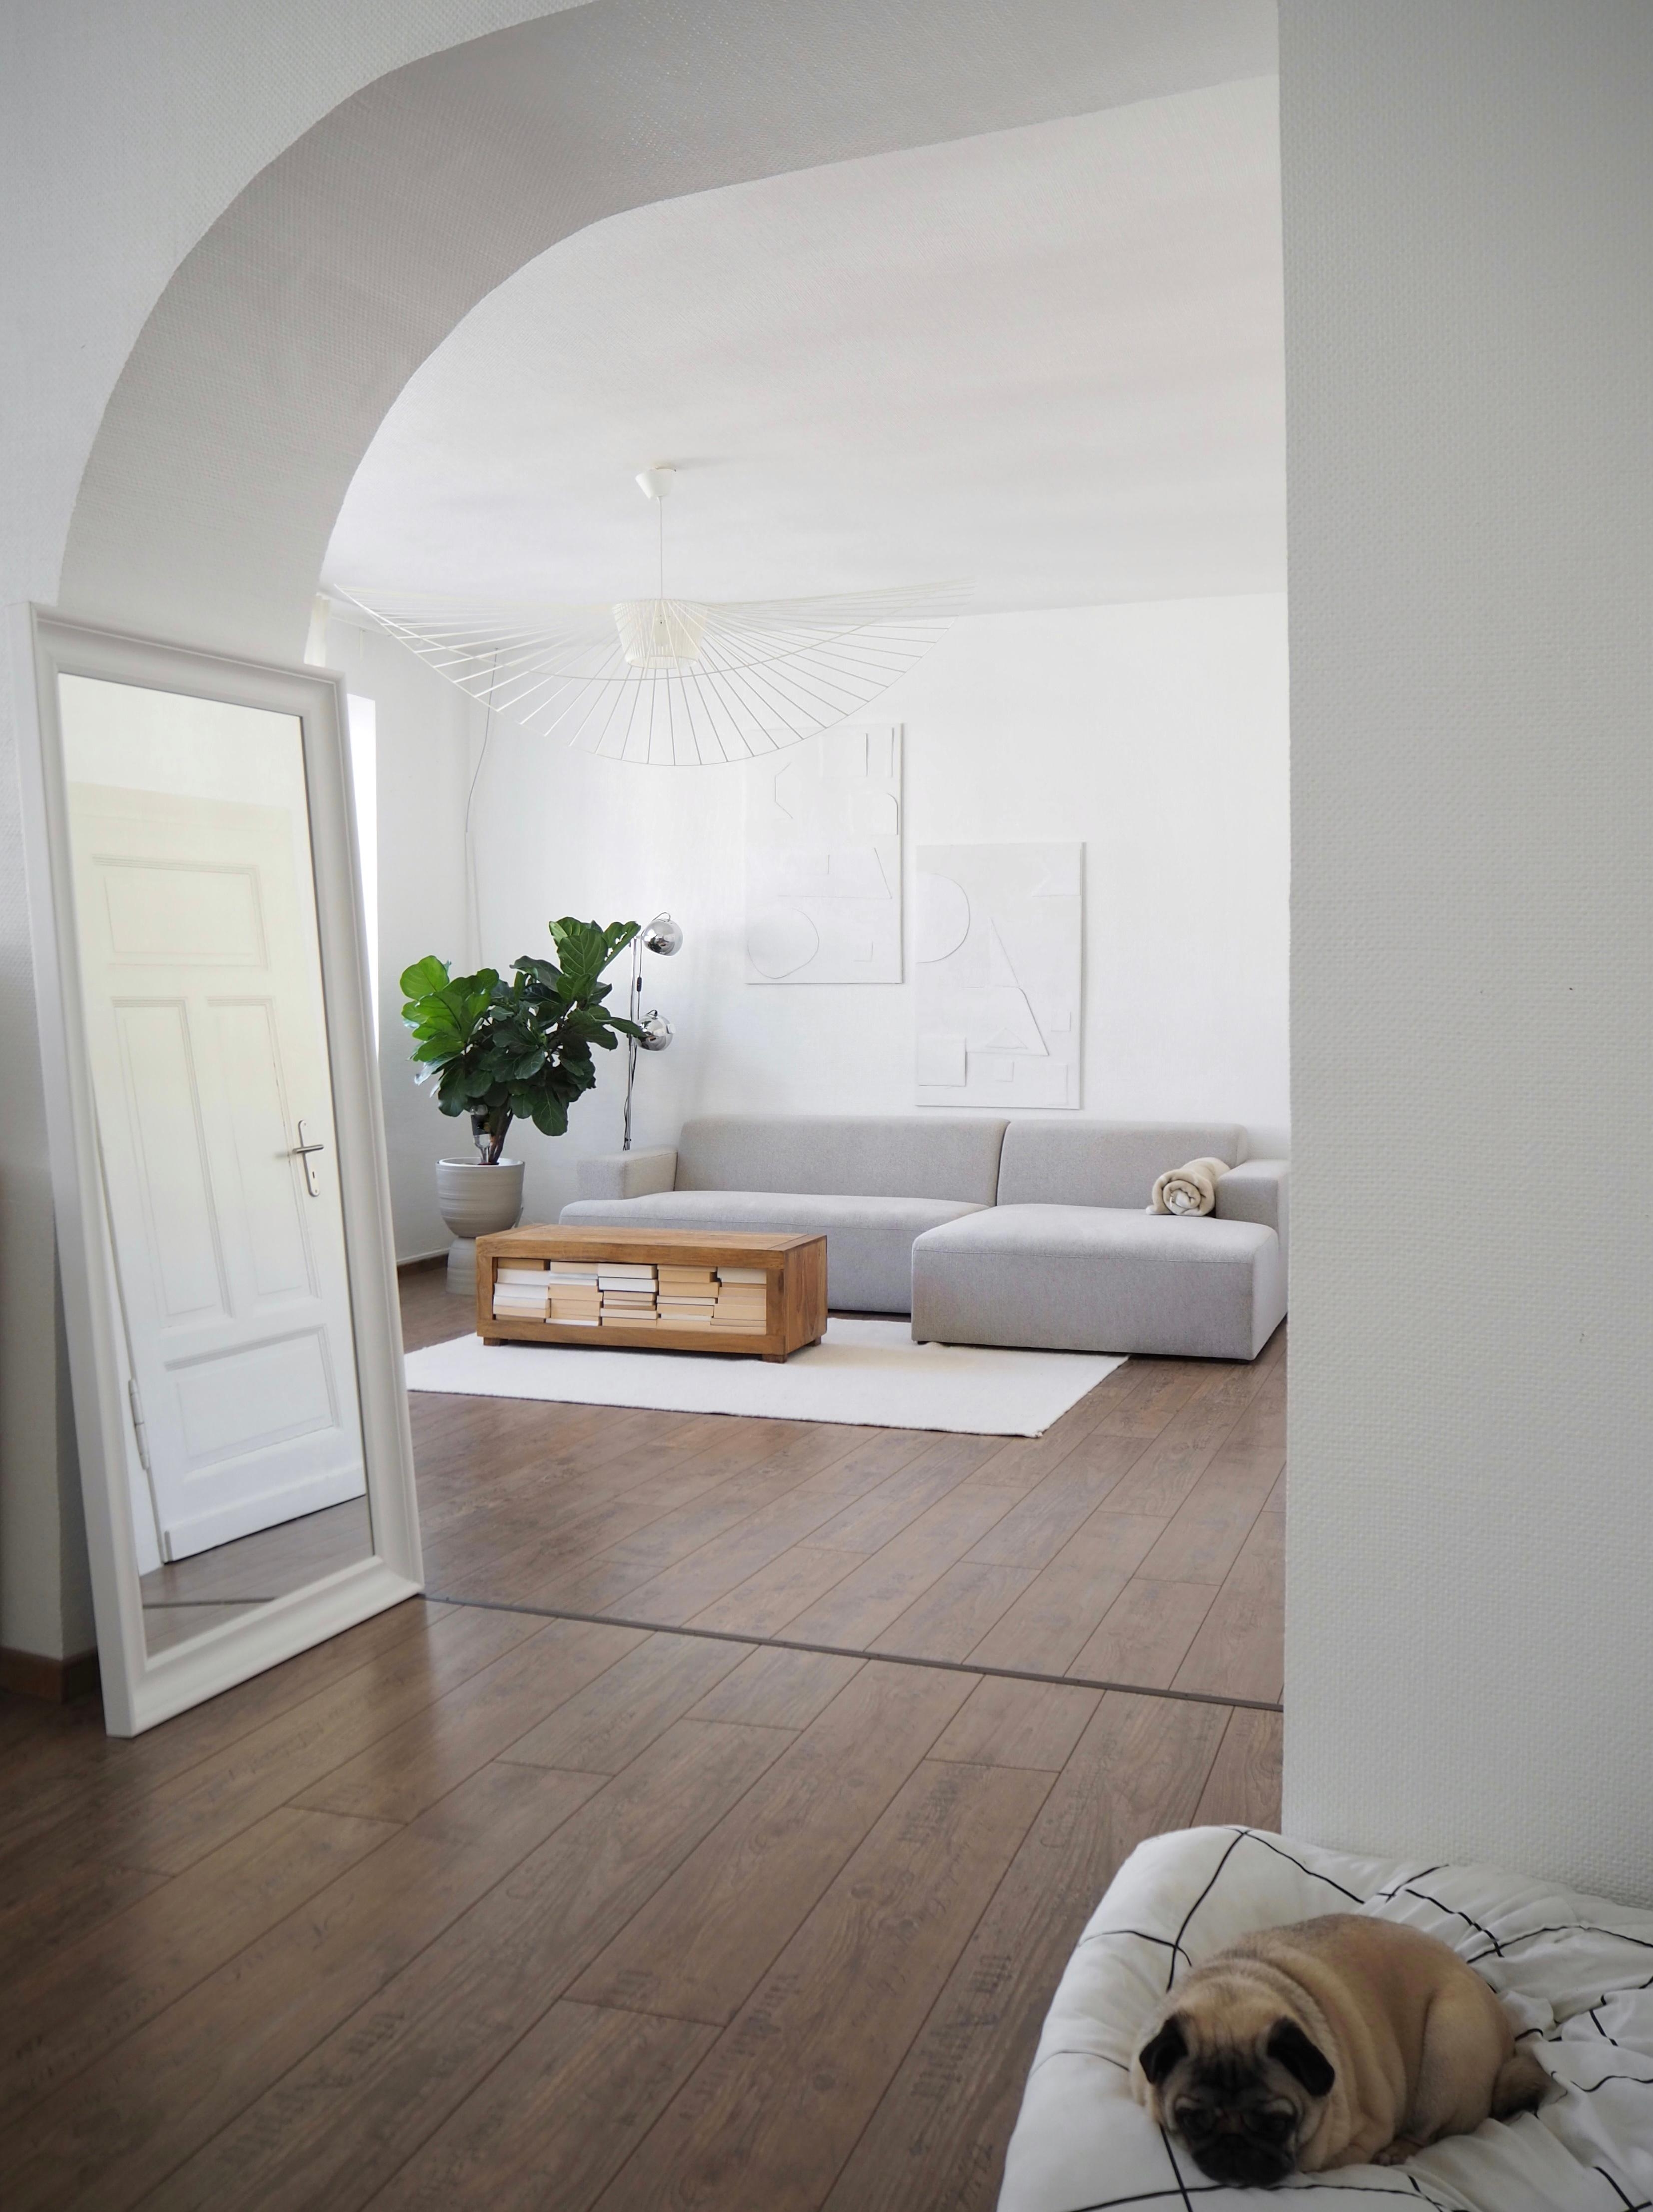 #sofa #bysidde #rundbogen #wohnzimmer #altbauliebe #minimalismus #couchtisch #couch #teppich #pflanze #diybild #deko